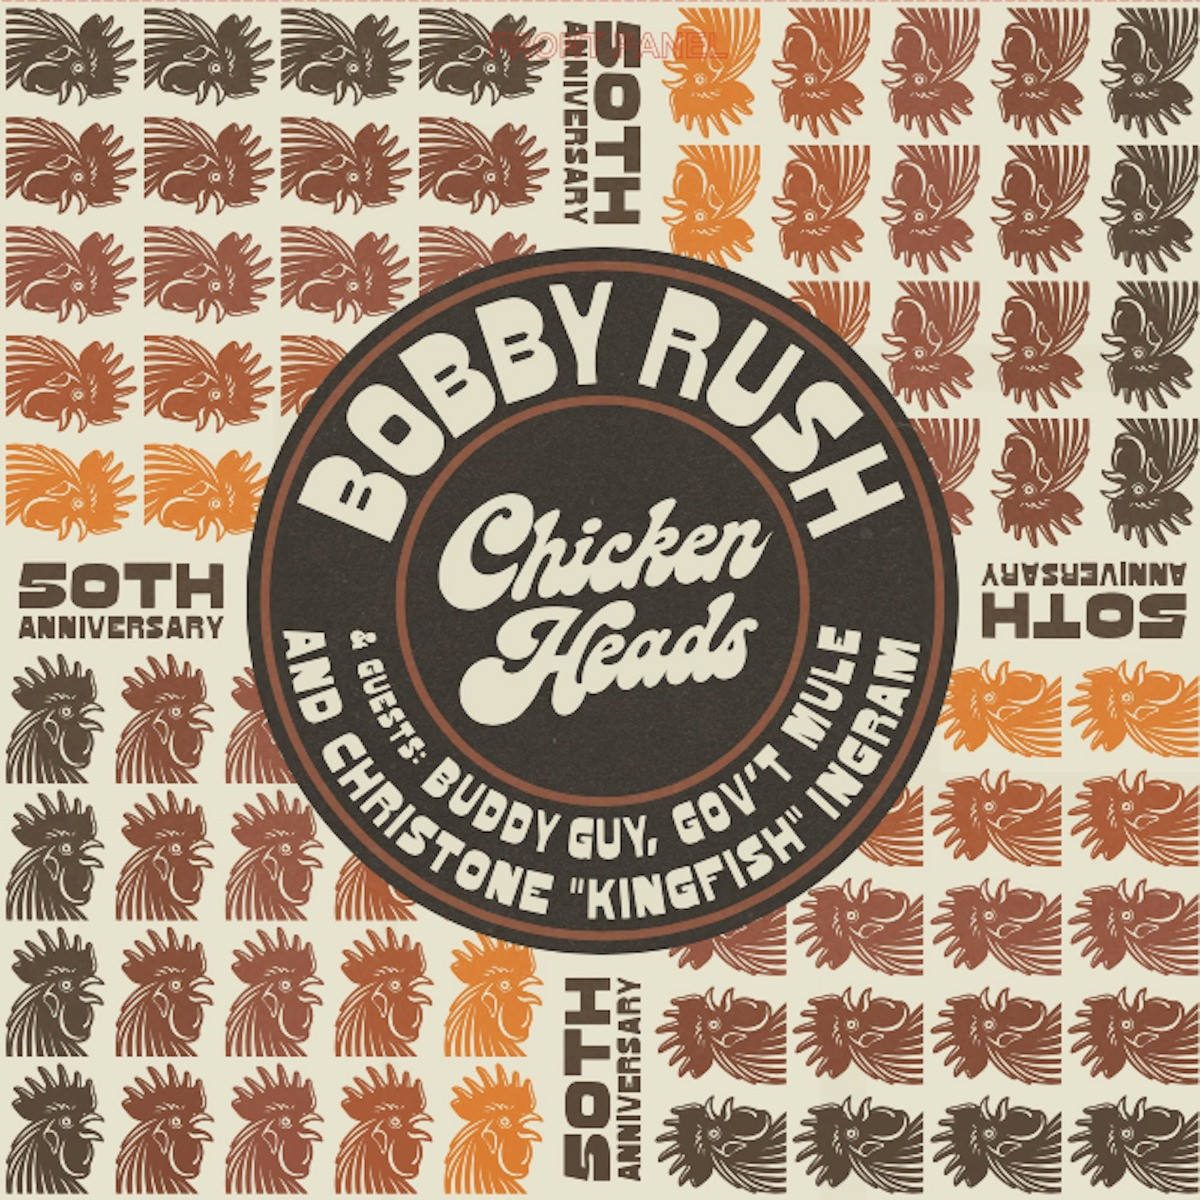 Bobby Rush - Chicken Heads (50th Anniversary) LP